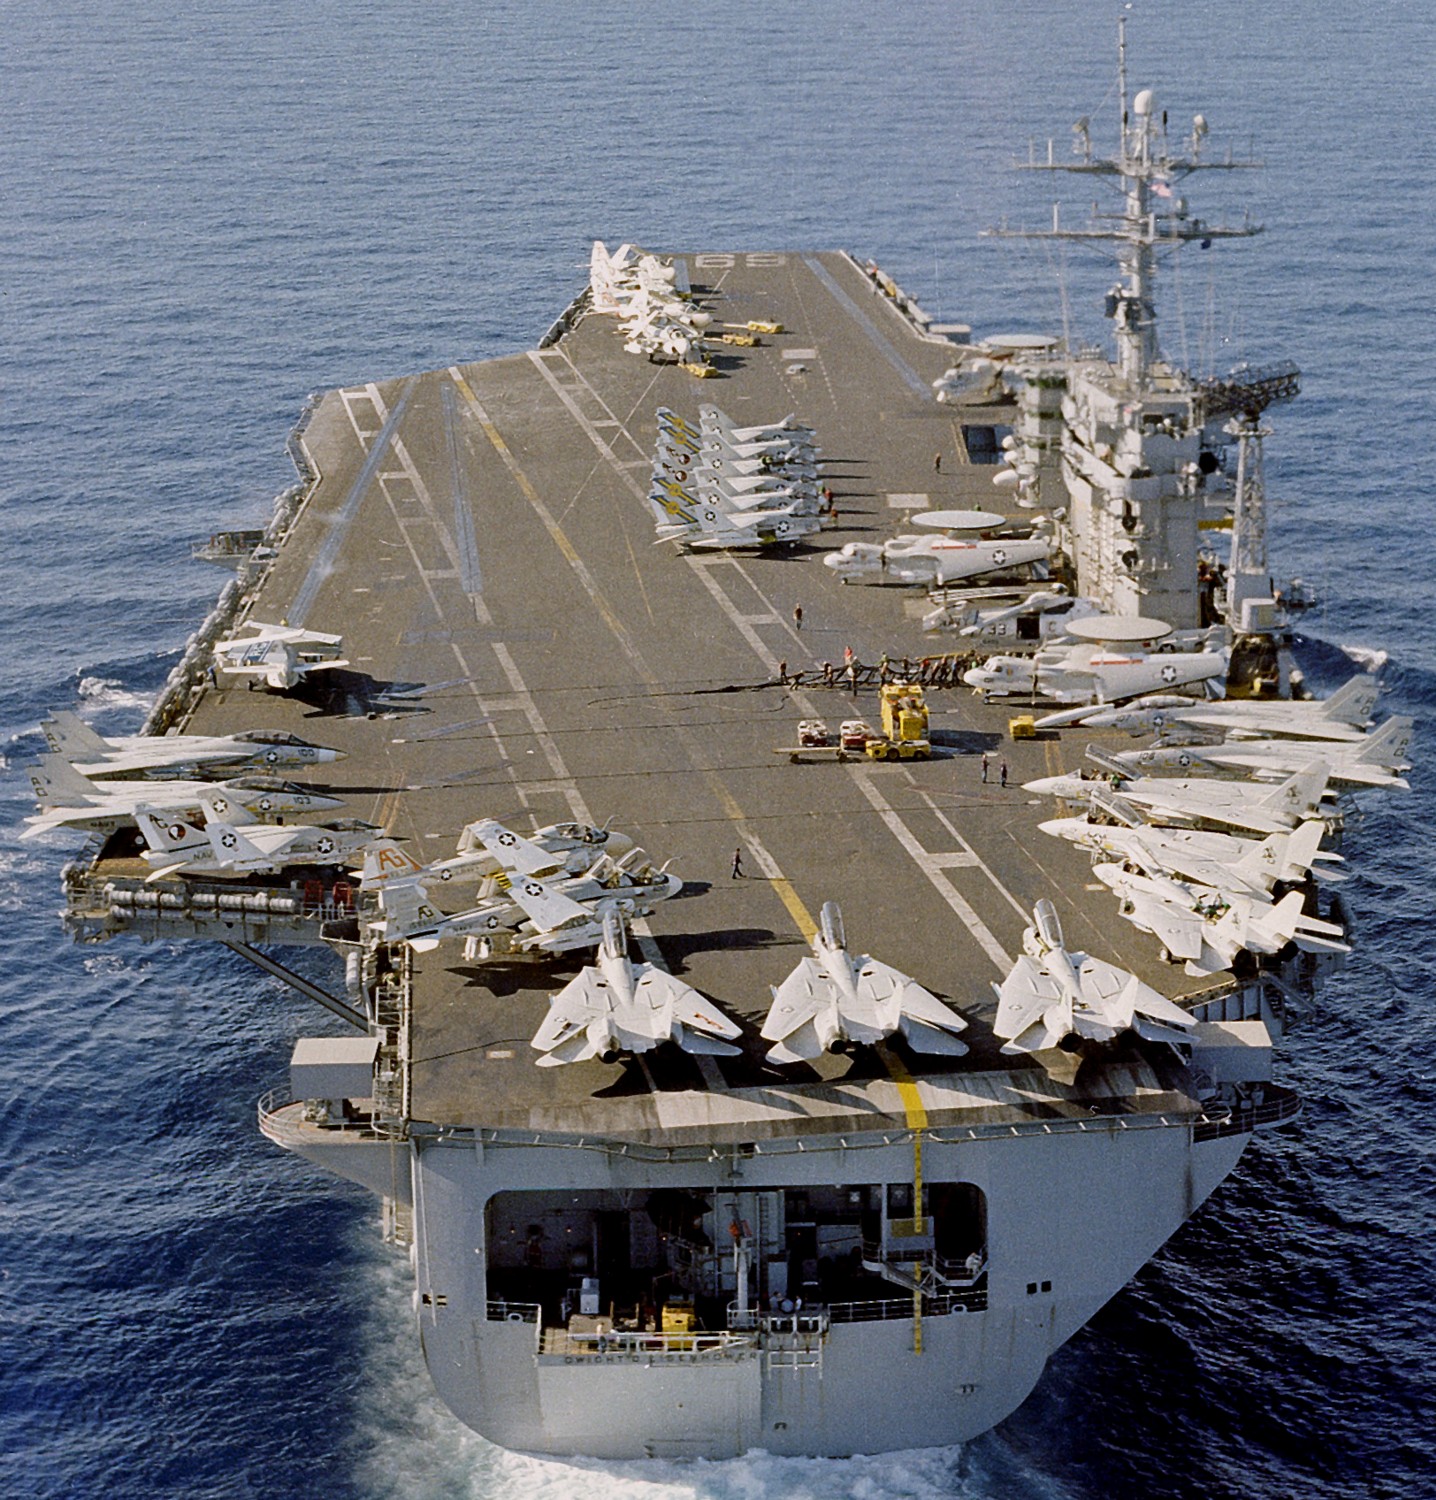 cvn-69 uss dwight d. eisenhower aircraft carrier air wing cvw-7 us navy 327